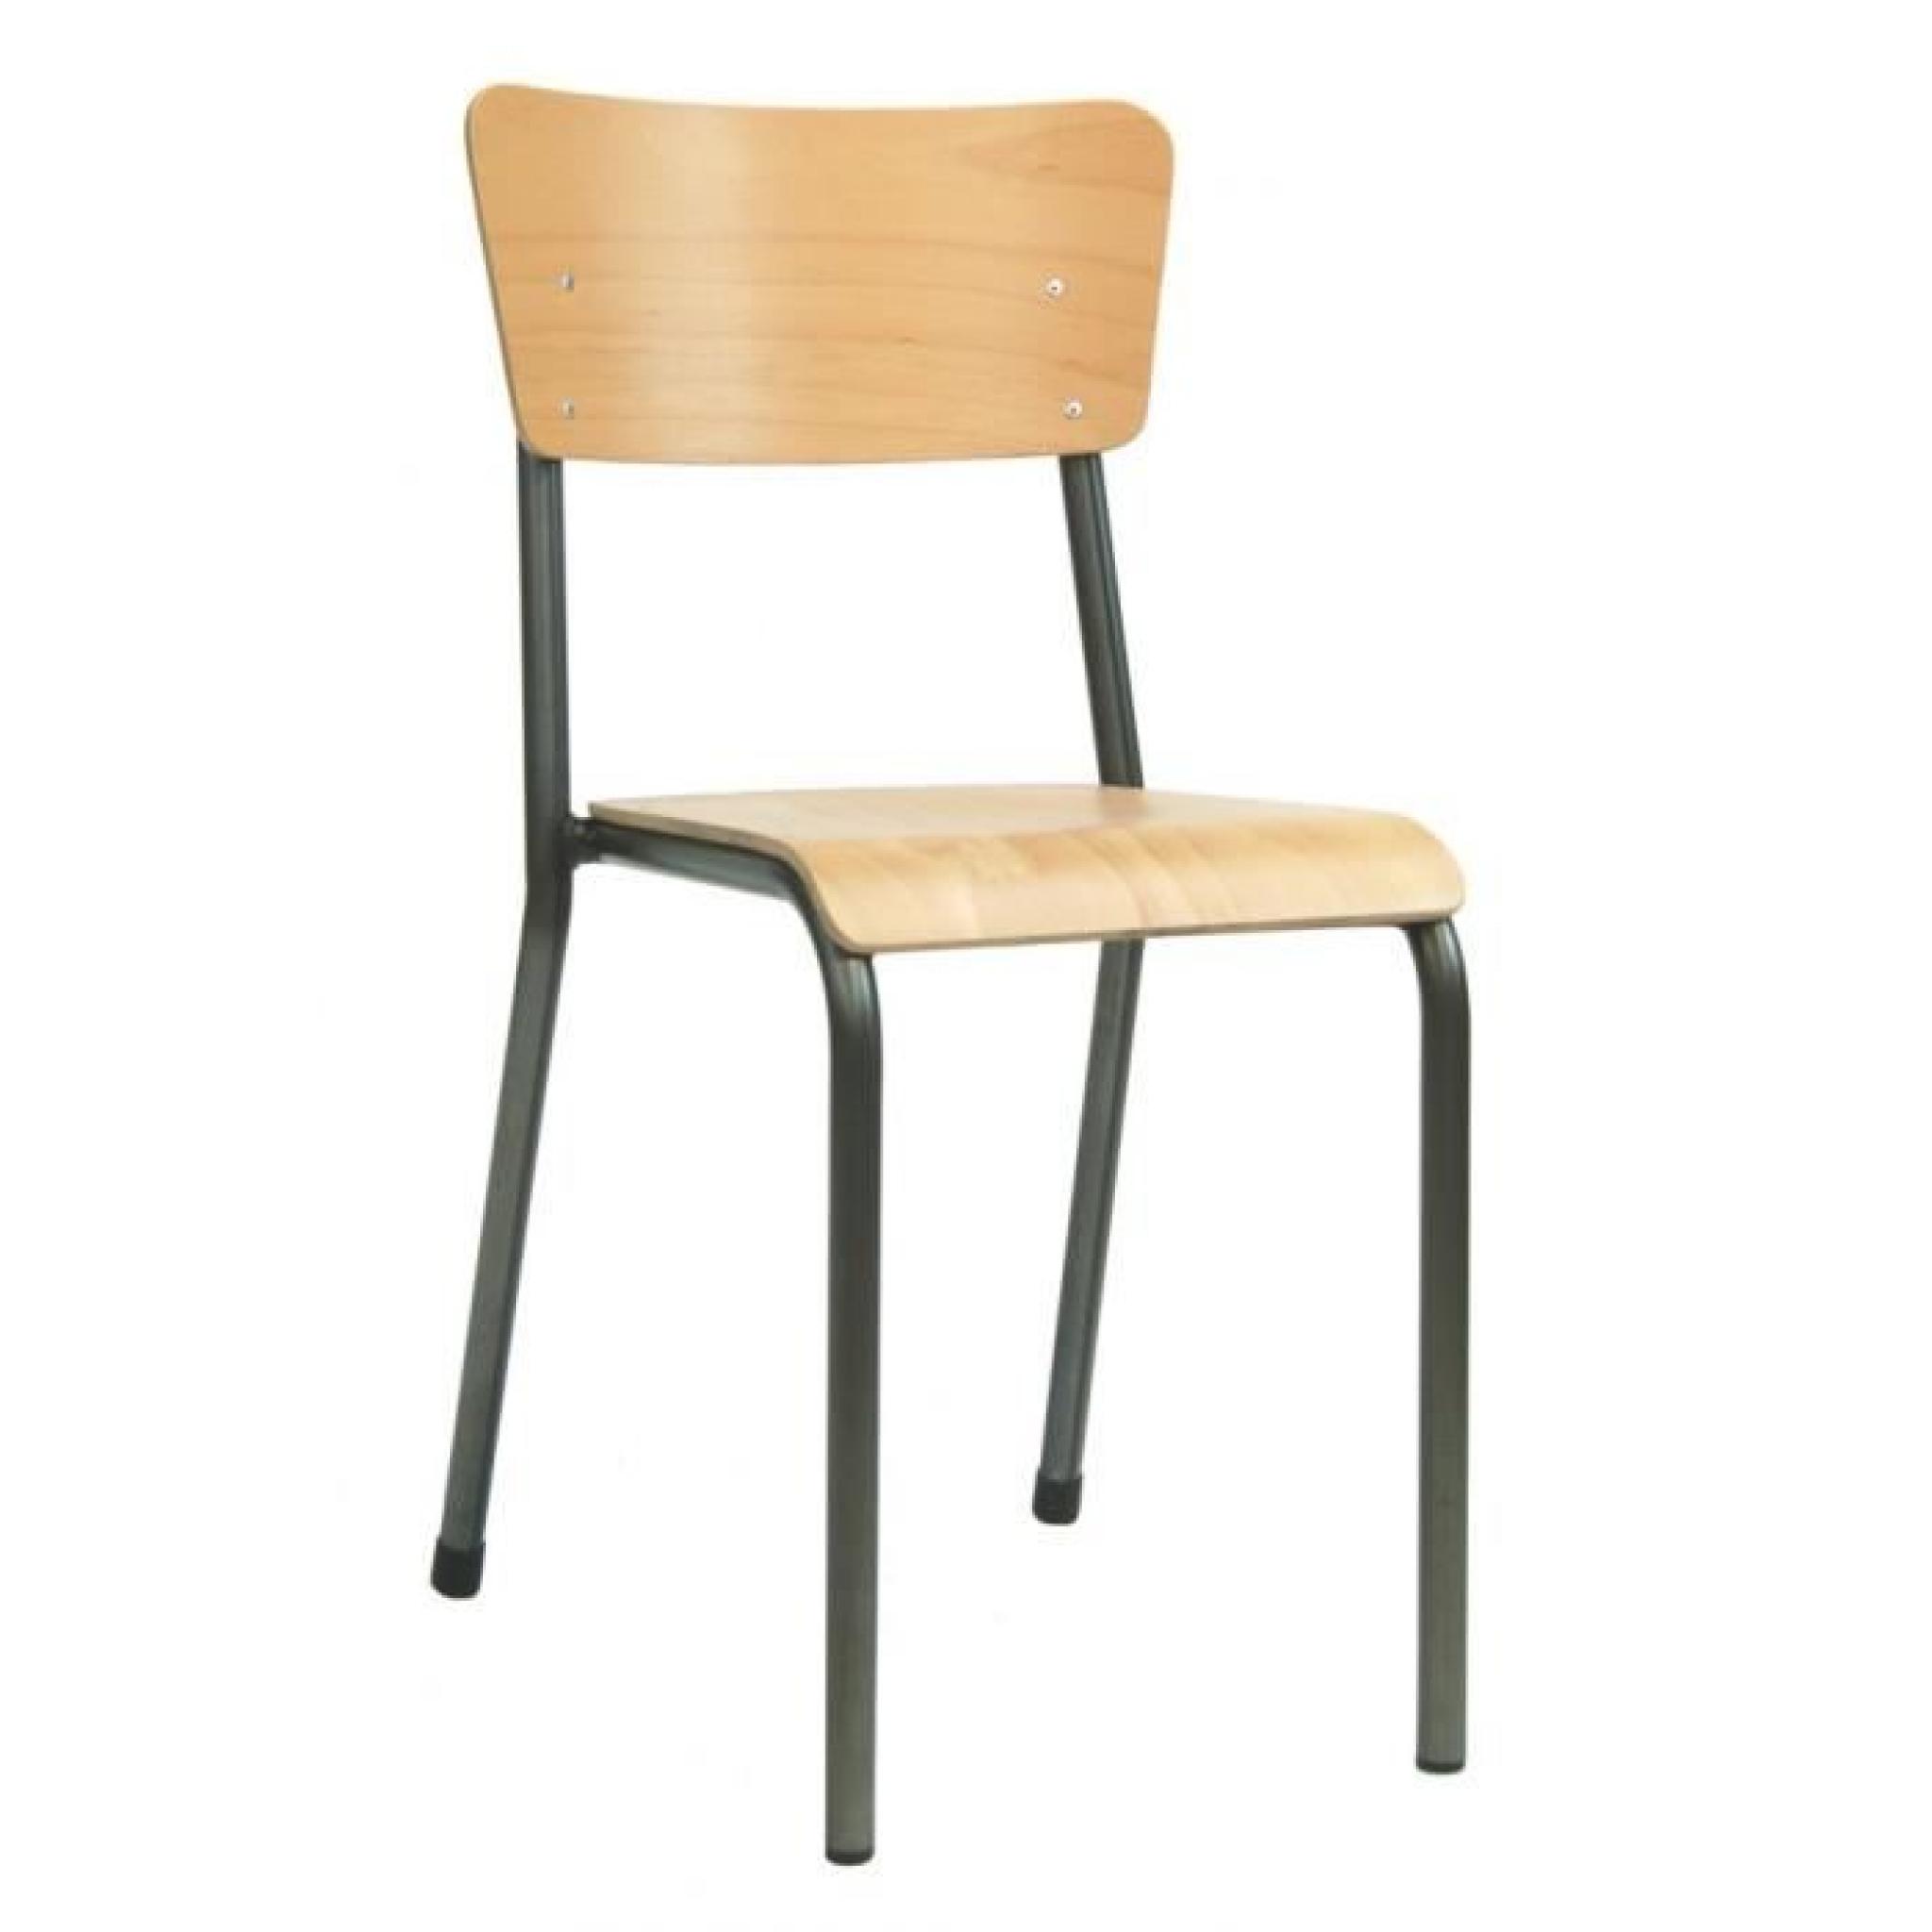 Chaise vintage tubulaire et stratifié MARIE-LOUISE par Declercq Design - MARIE-LOUISE-Vernis-45 - Acier - Standard - 45 cm - Vernis